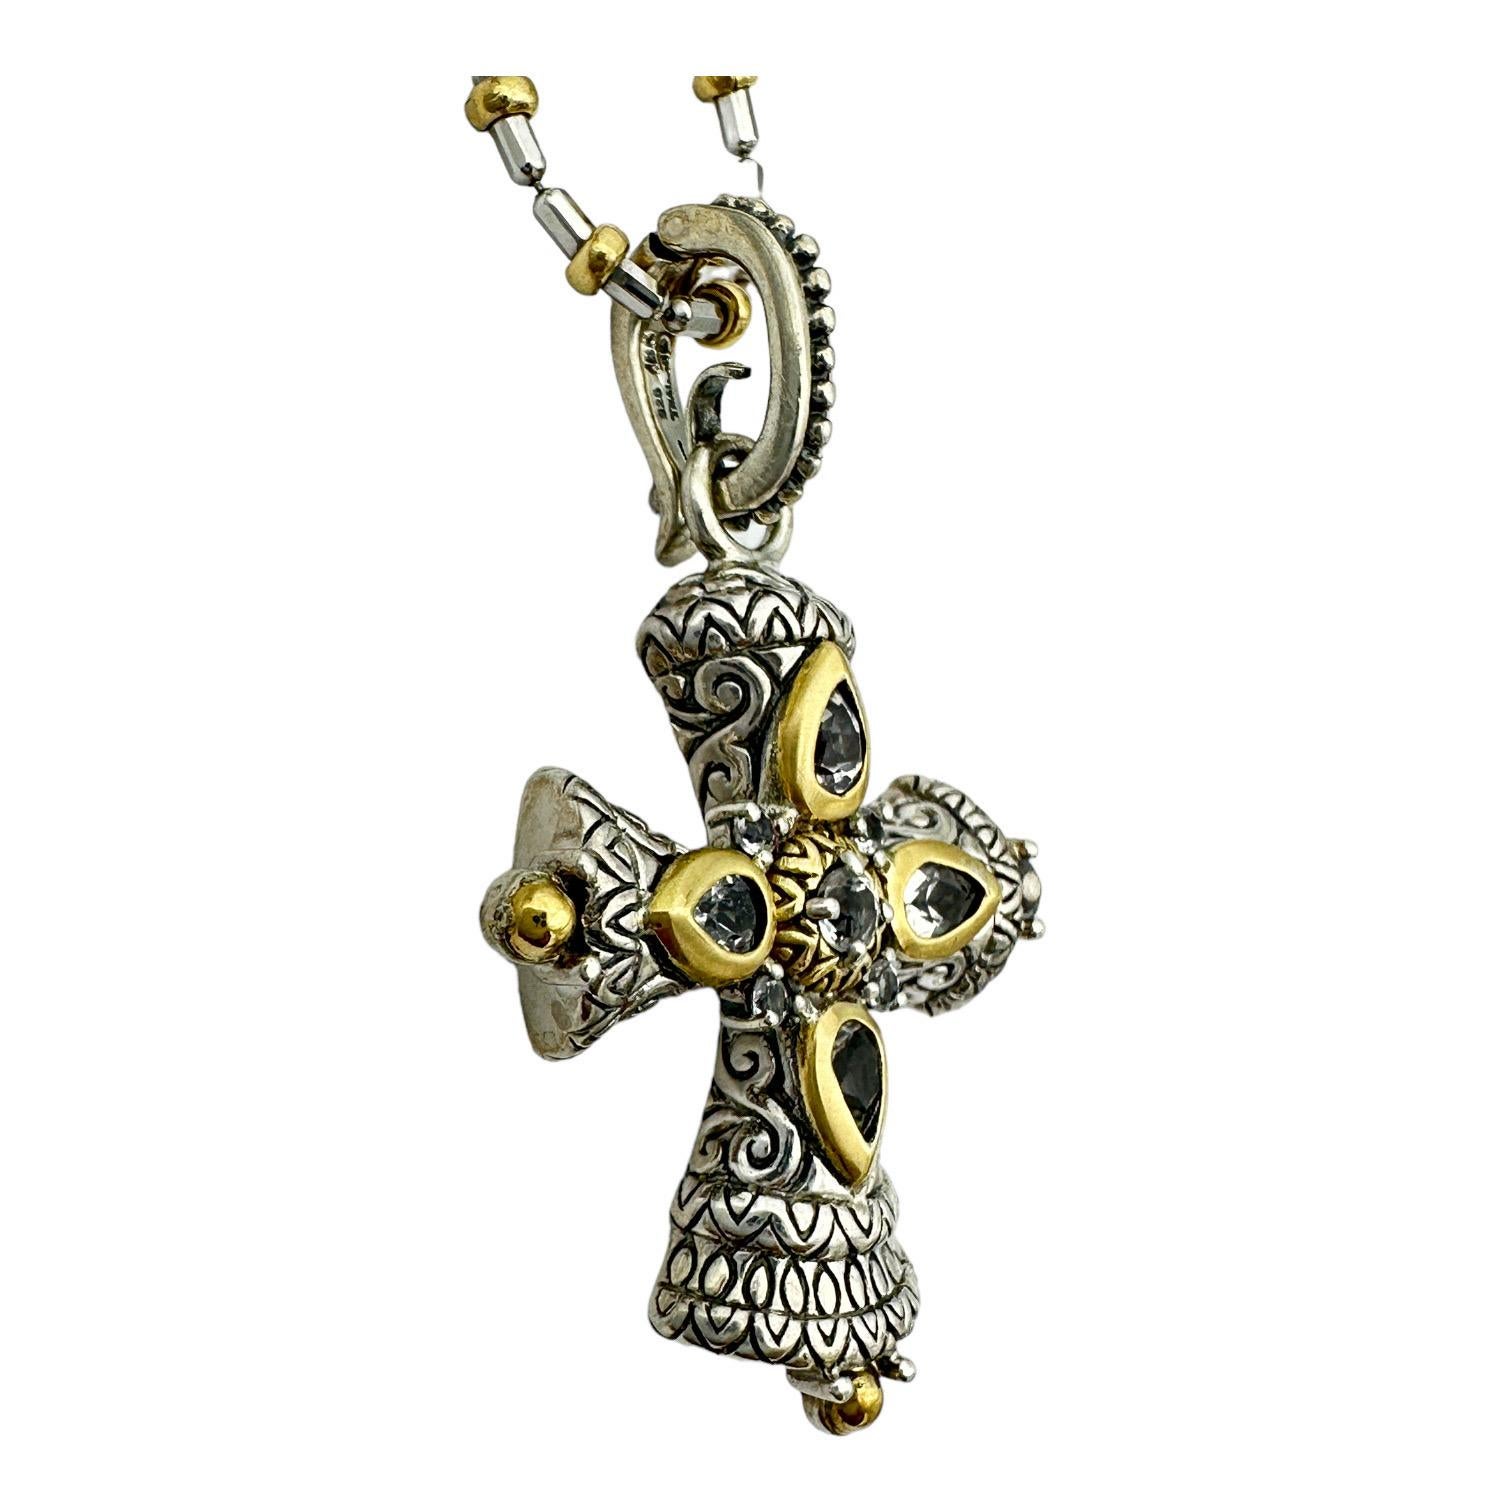  Cette croix bicolore 18 carats est ornée d'un rehausseur de croix byzantine, ce qui lui confère une allure élégante et un design classique. Les tons dorés et argentés se combinent pour produire un effet stupéfiant qui convient aussi bien aux